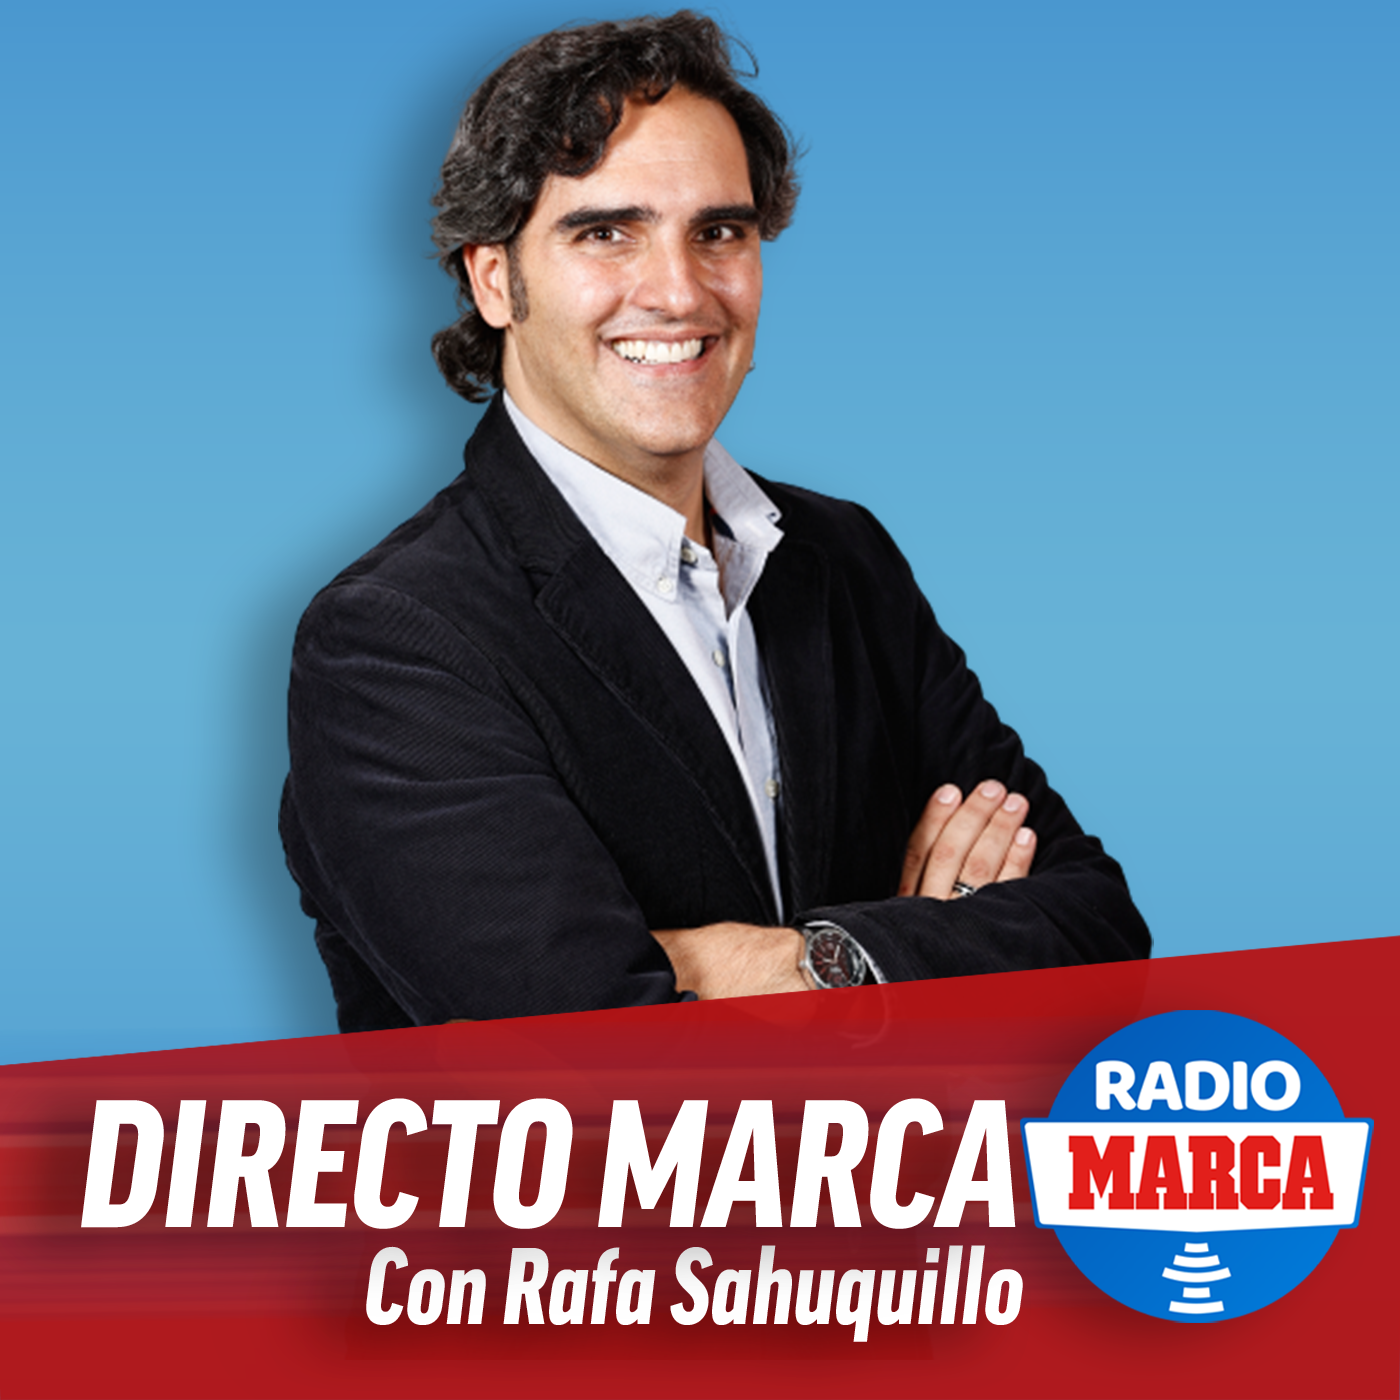 Directo MARCA con Rafa Sahuquillo  (31/3/2021) 1:00pm